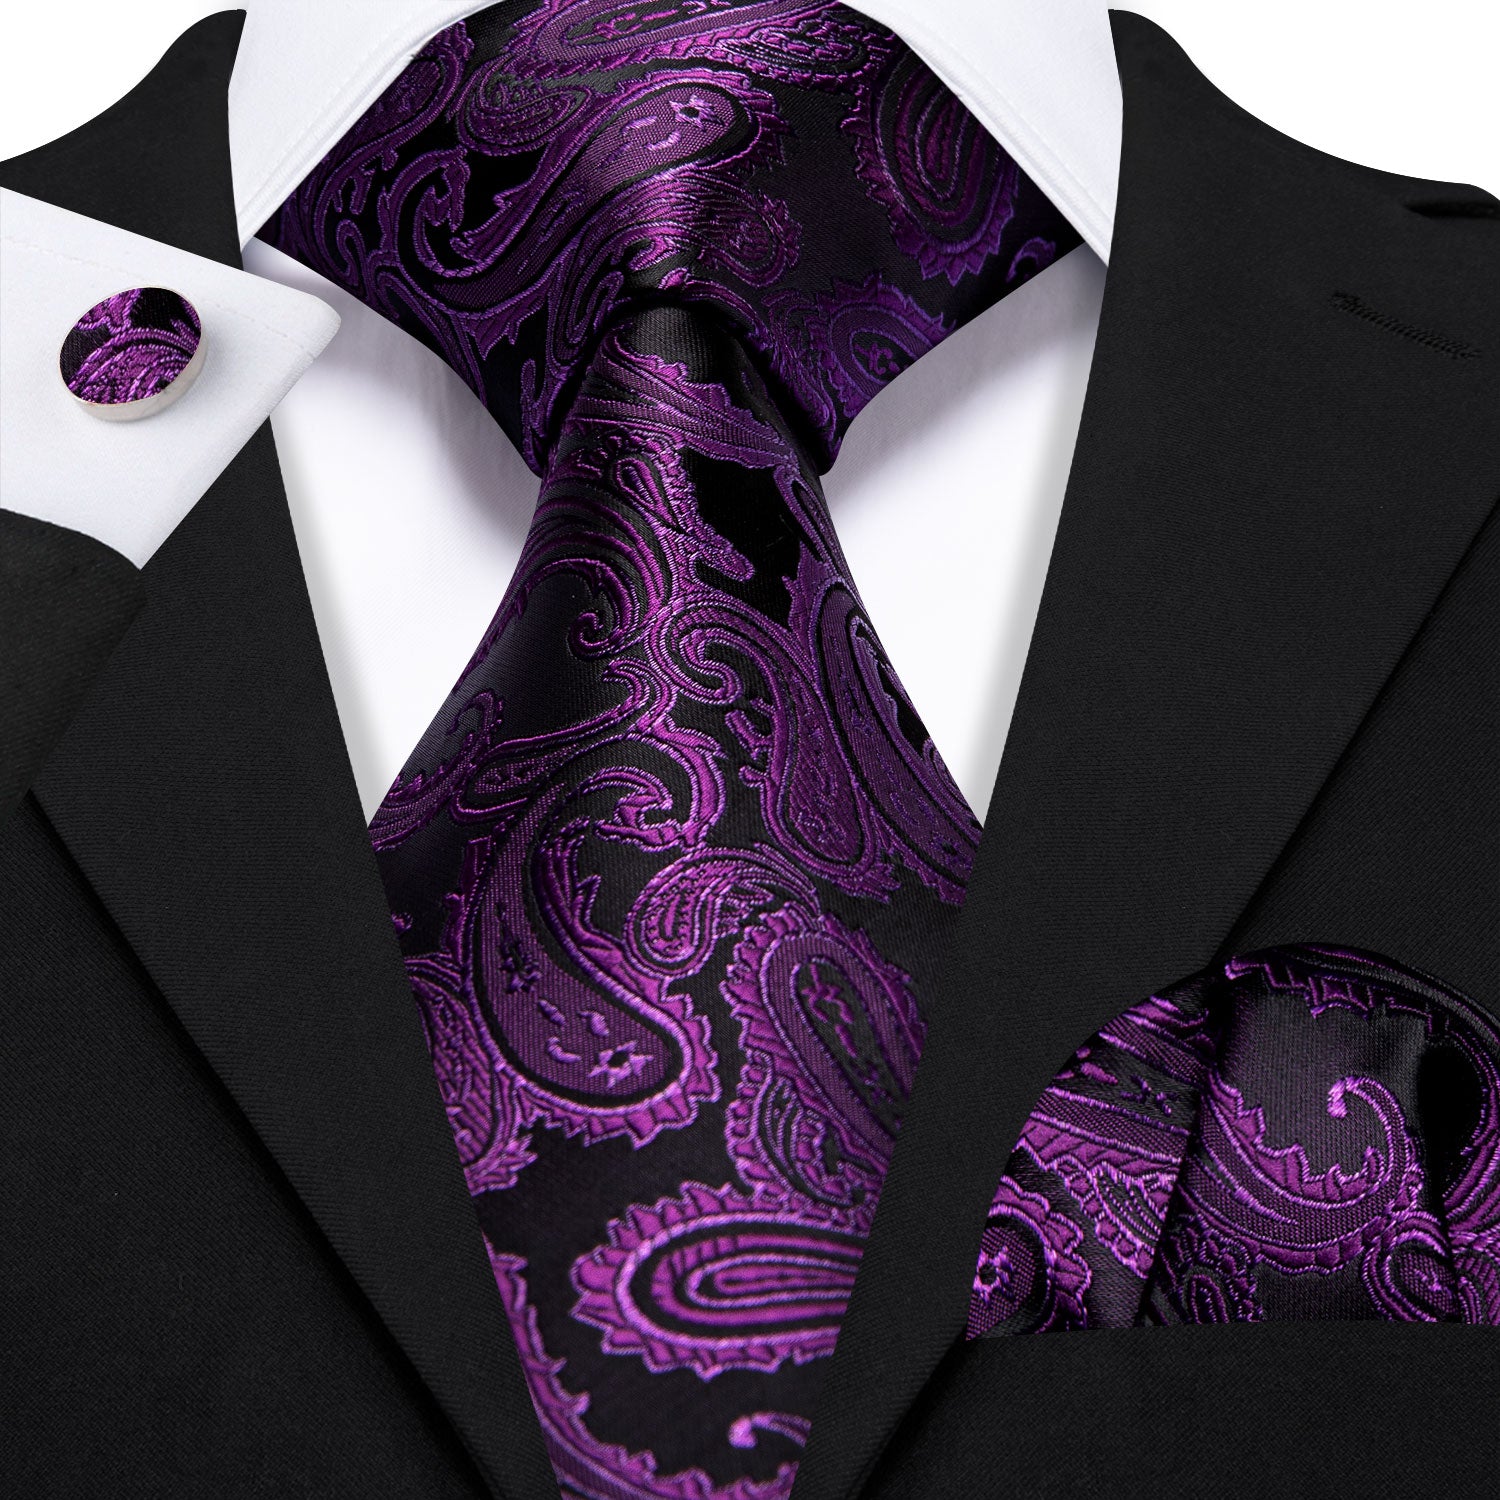 Violet Black Paisley Silk Tie Handkerchief Cufflinks Set